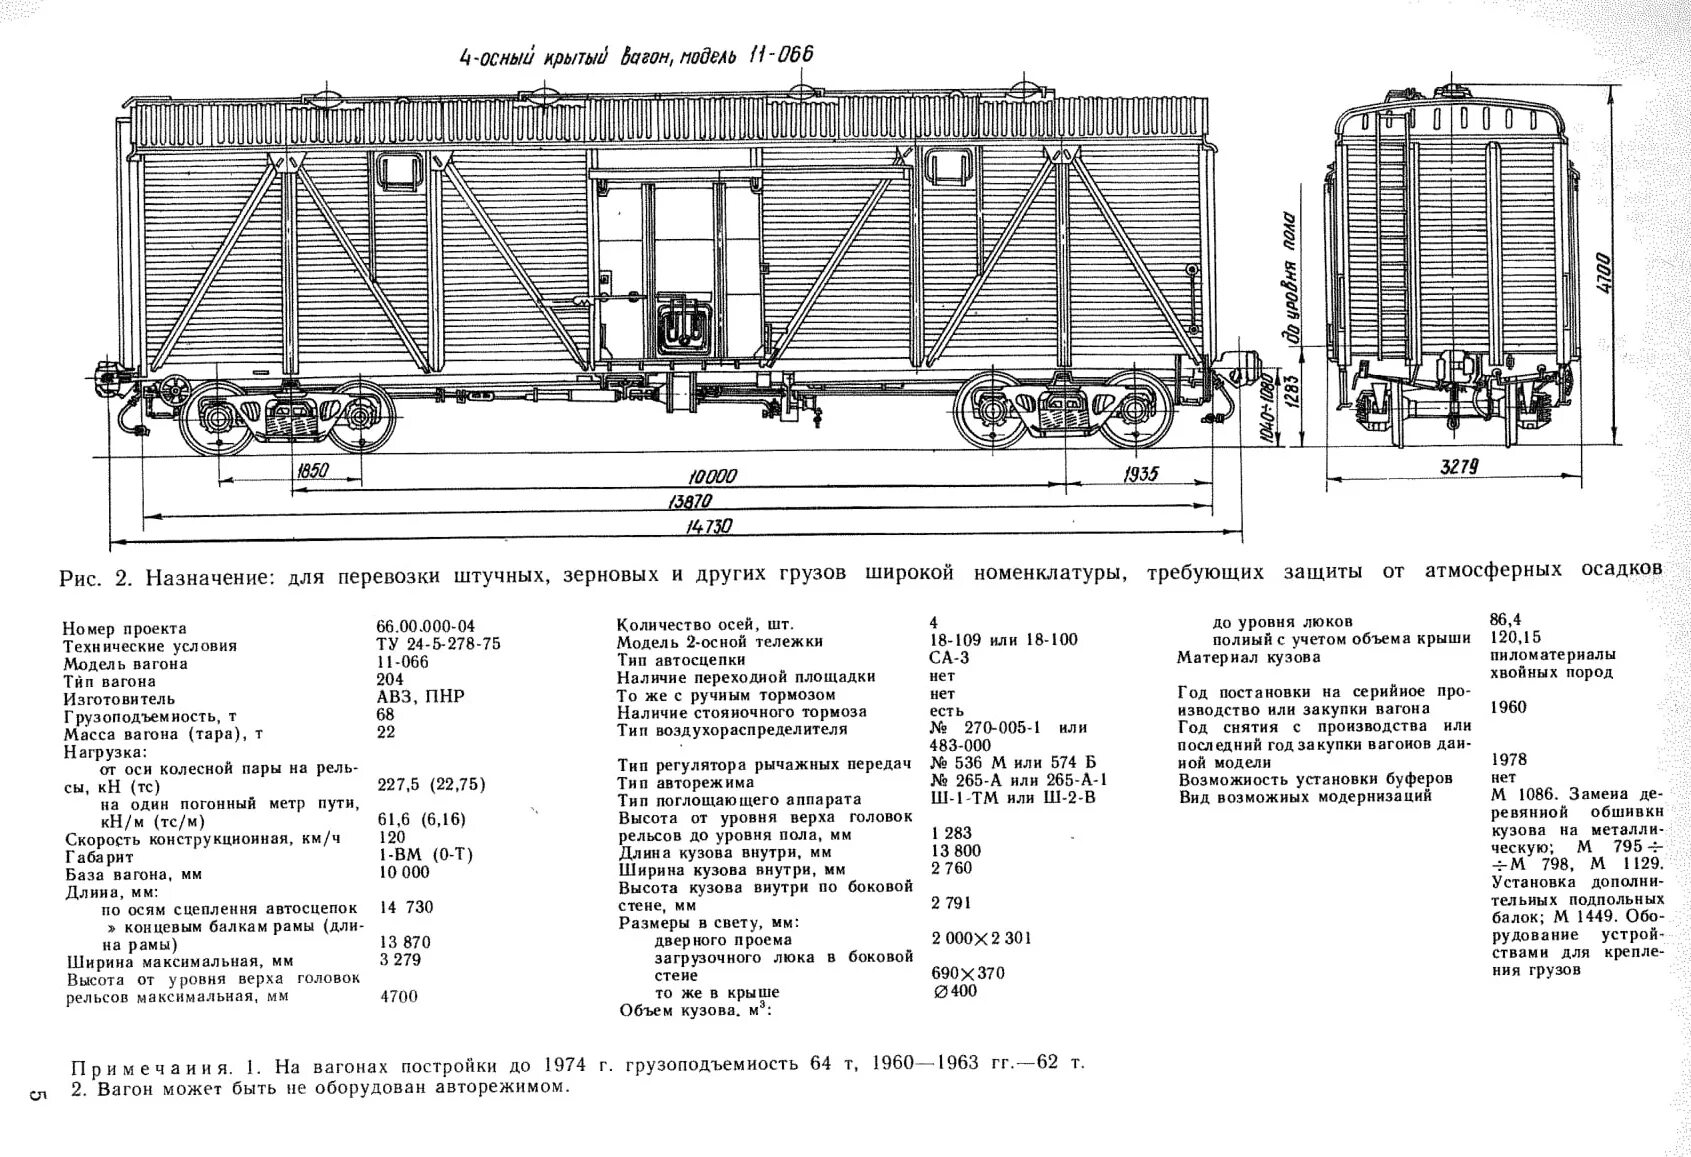 Количество железнодорожных вагонов. 4-Осный Крытый вагон, модель 11-066. Сколько весит Крытый вагон. Вес деревянного полувагона. Масса ЖД вагона крытых вагонов.